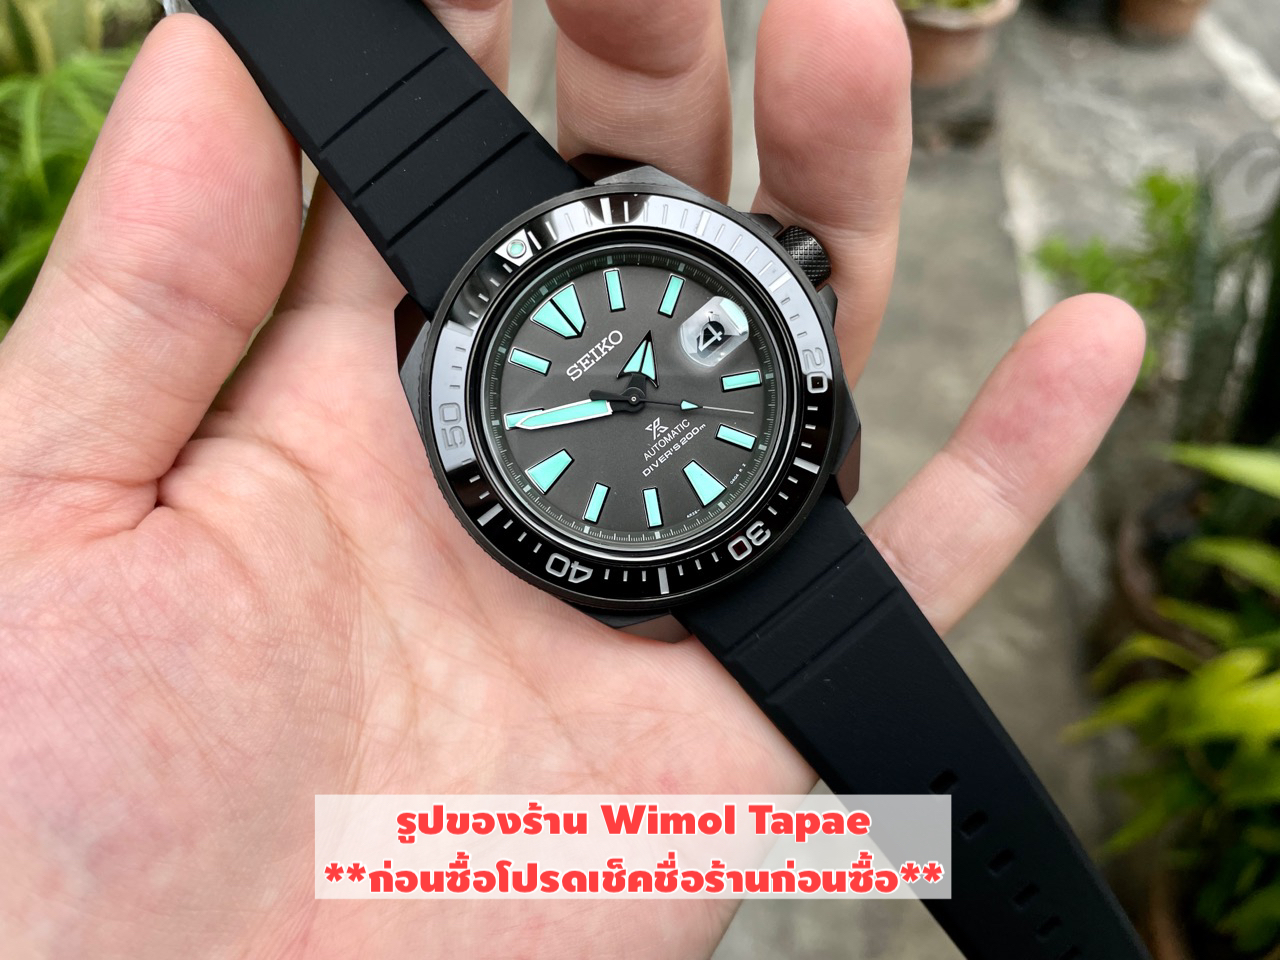 ประกันศูนย์ไทย) Seiko Prospex King Samurai Black Series Limited Edition  รุ่น SRPH97K1 - Wimolwatch ขายนาฬิกา ของแท้จากศูนย์ในราคาที่เป็นกันเอง  มีการรับประกันตัวเครื่องทุกเรือน : Inspired by 